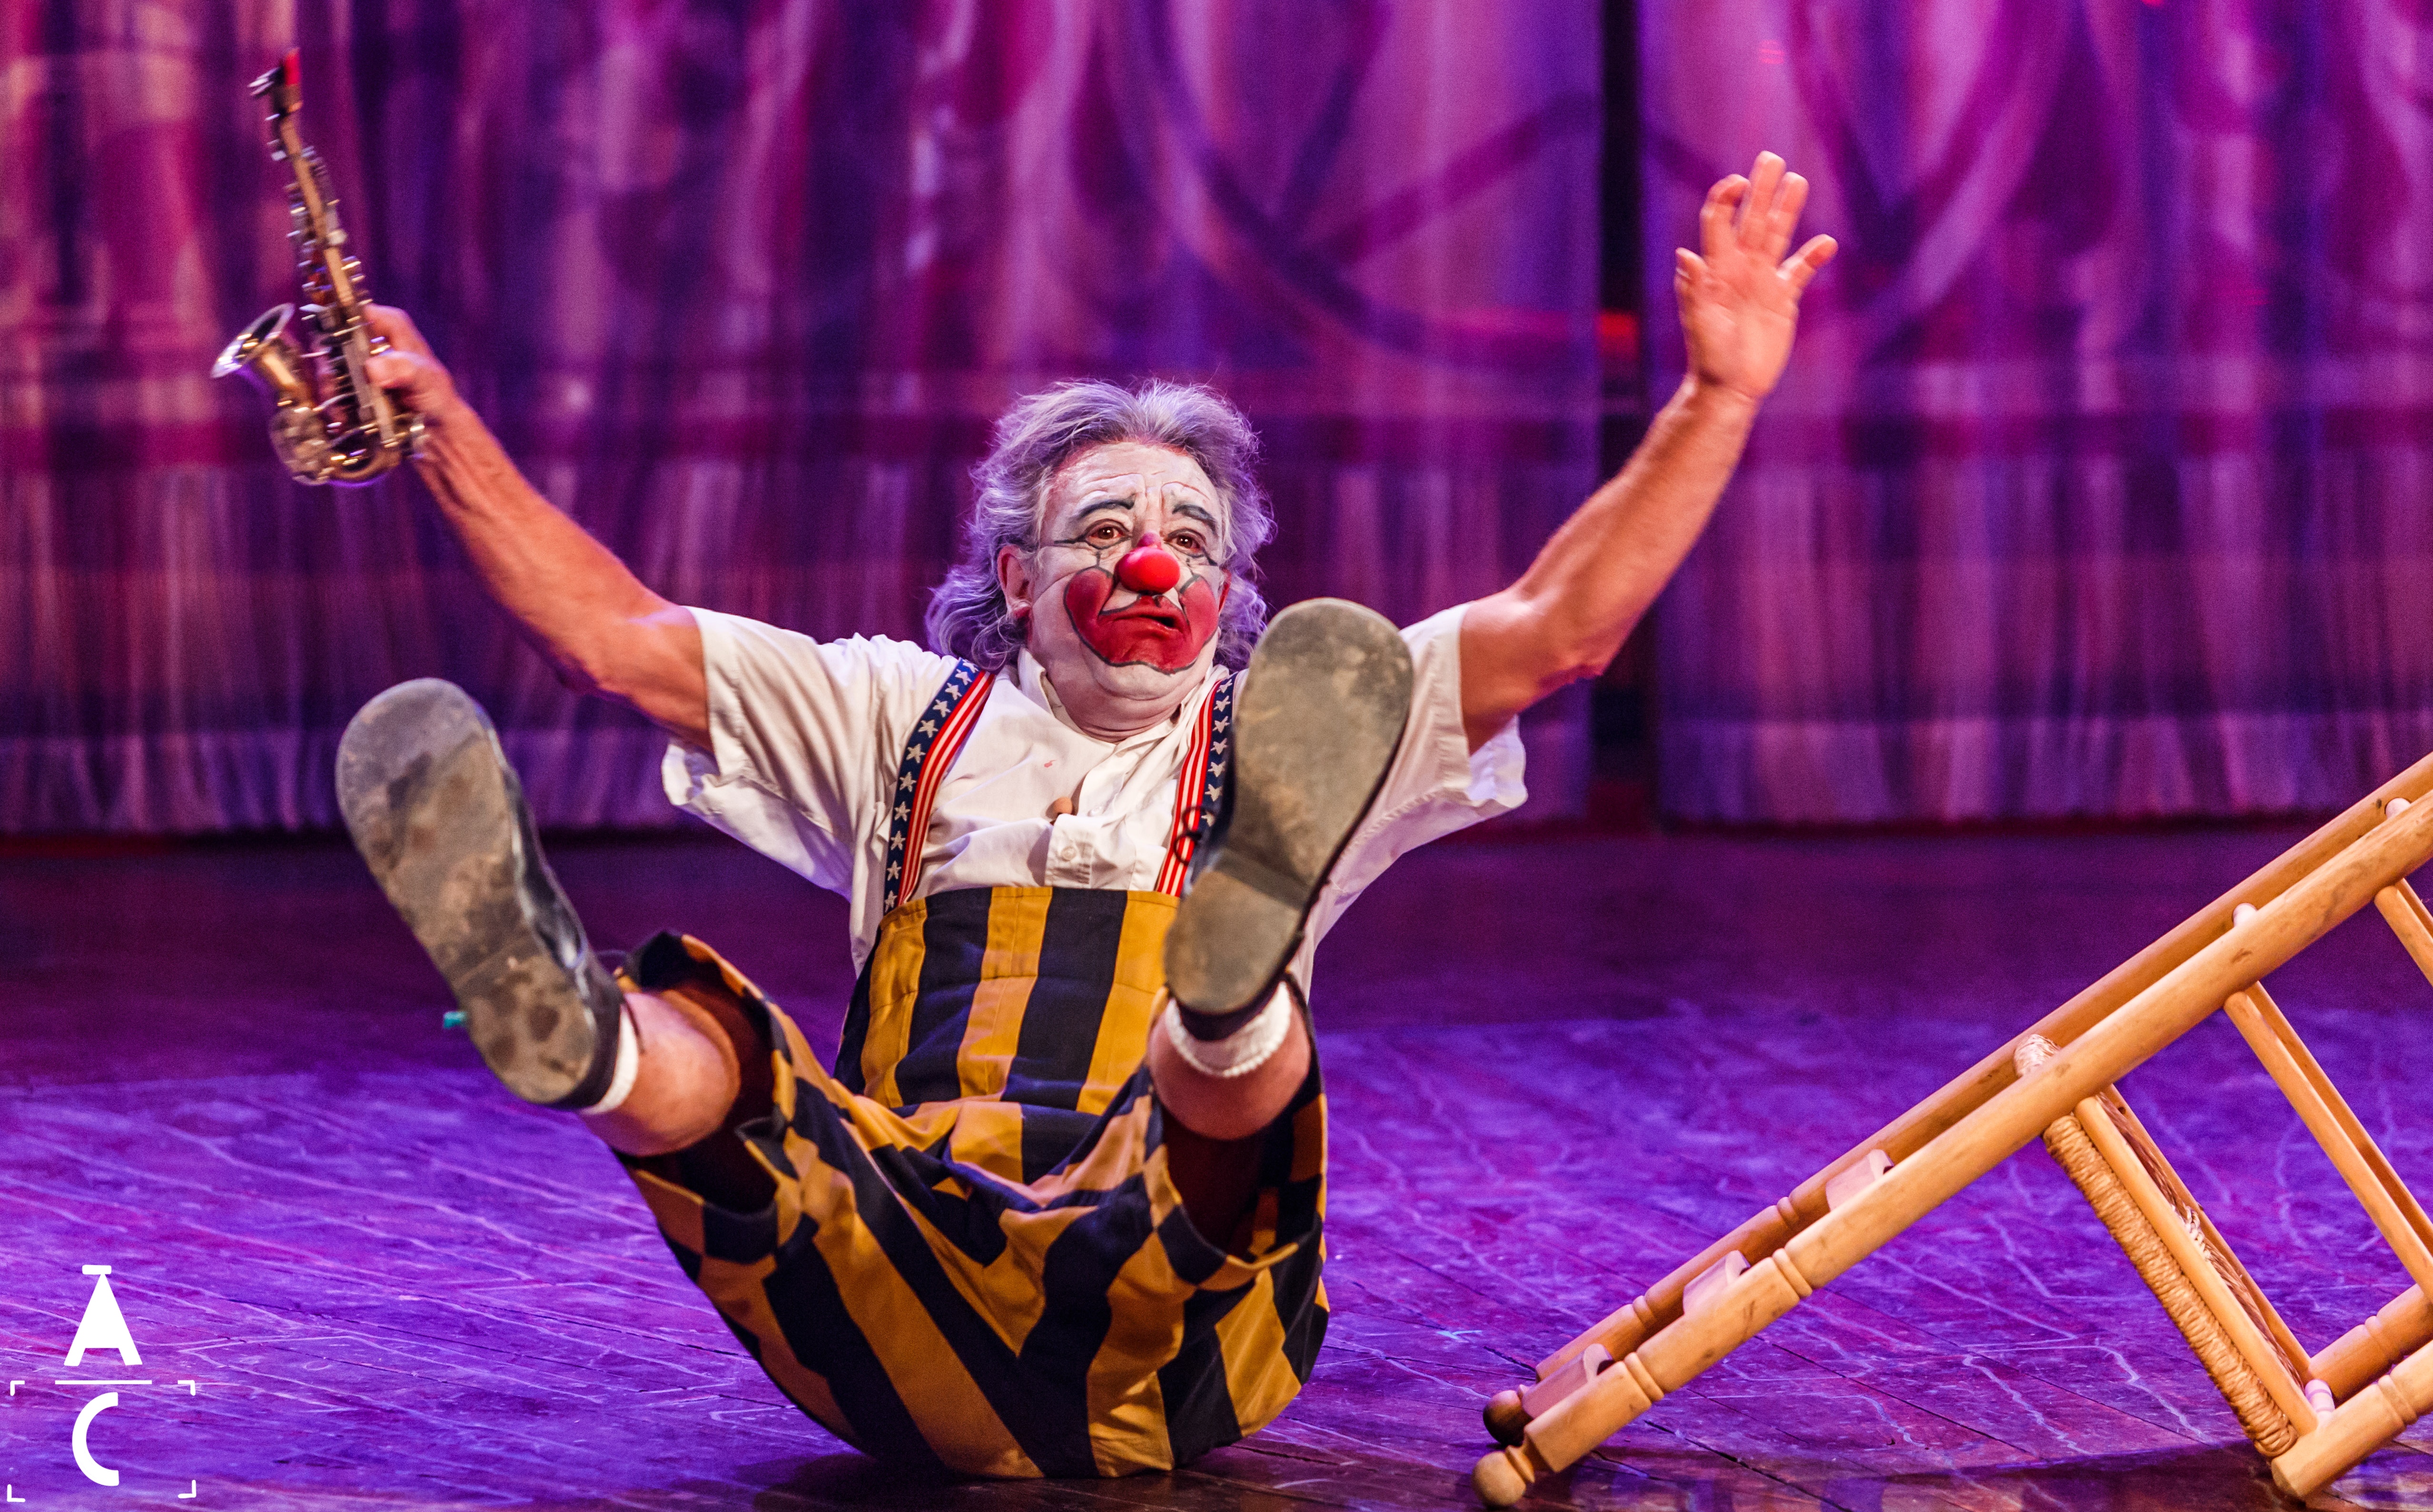 El Circo Raluy y Tortell Poltrona se unen en un espectáculo en Girona por primera vez